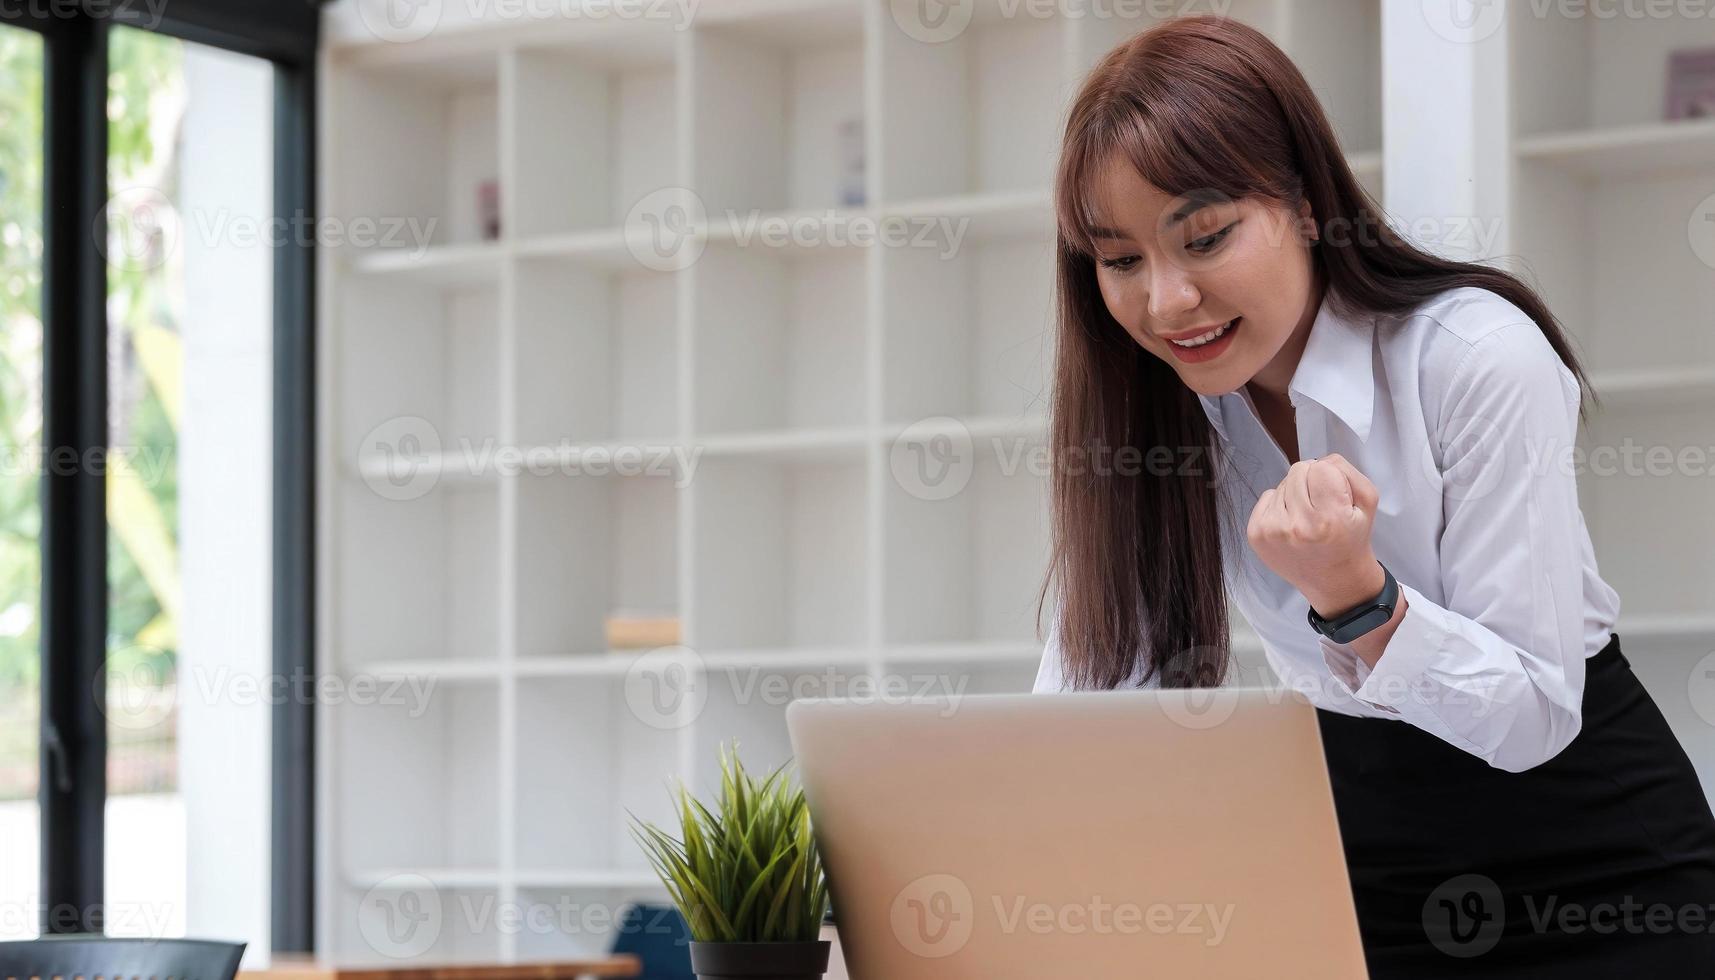 foto van een vrolijke zakenvrouw die in een vergaderruimte staat